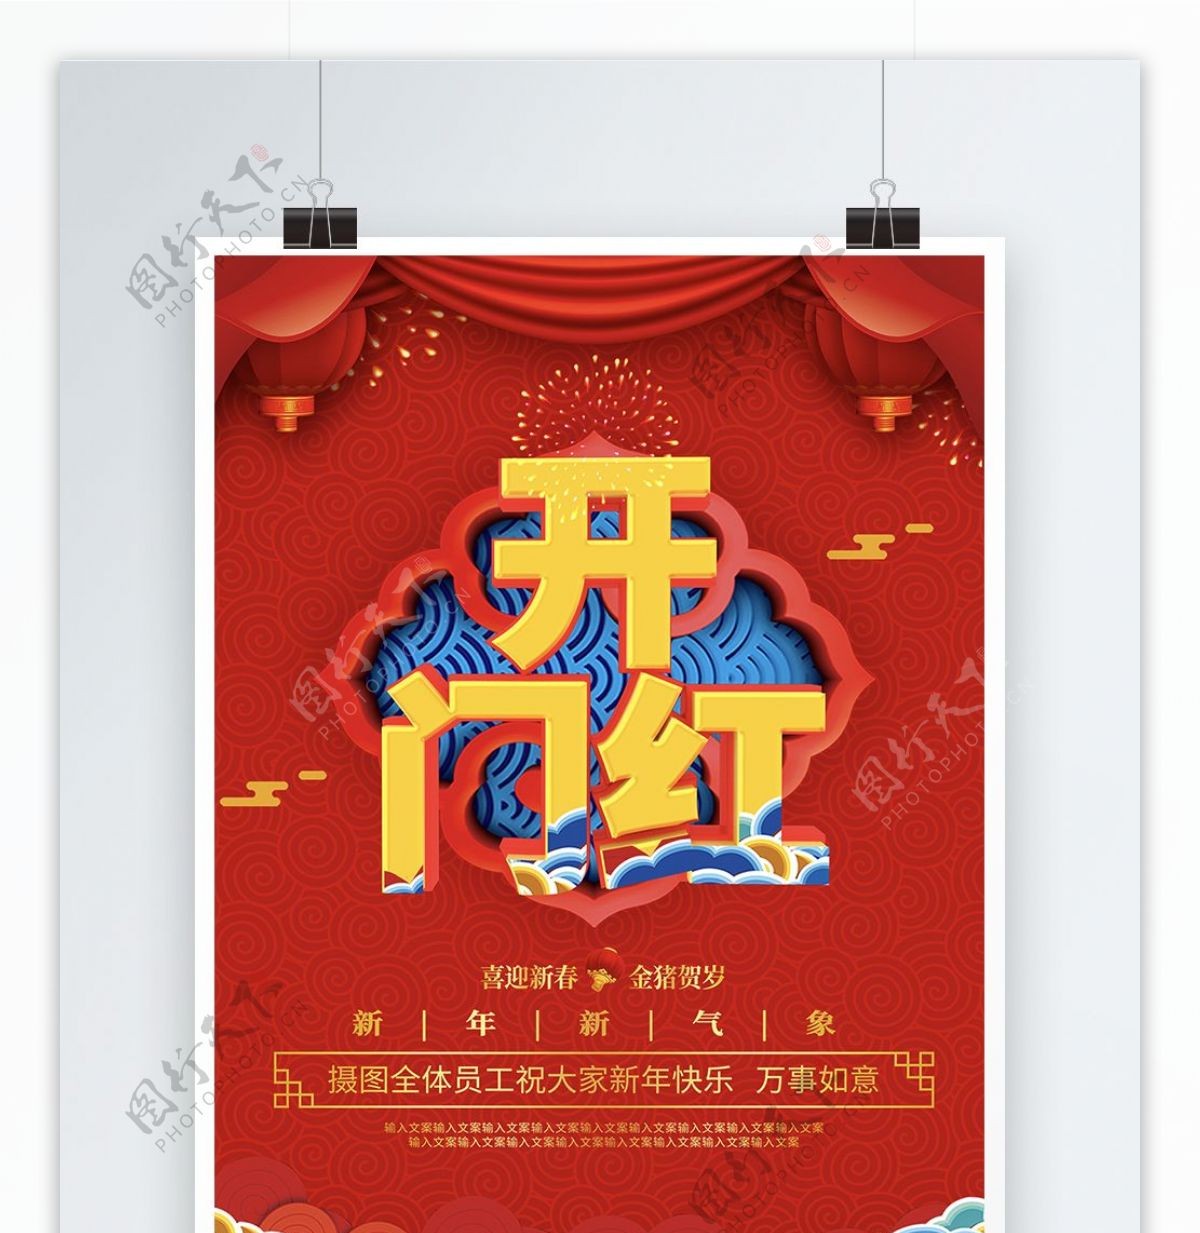 2019开门红猪年设计宣传海报